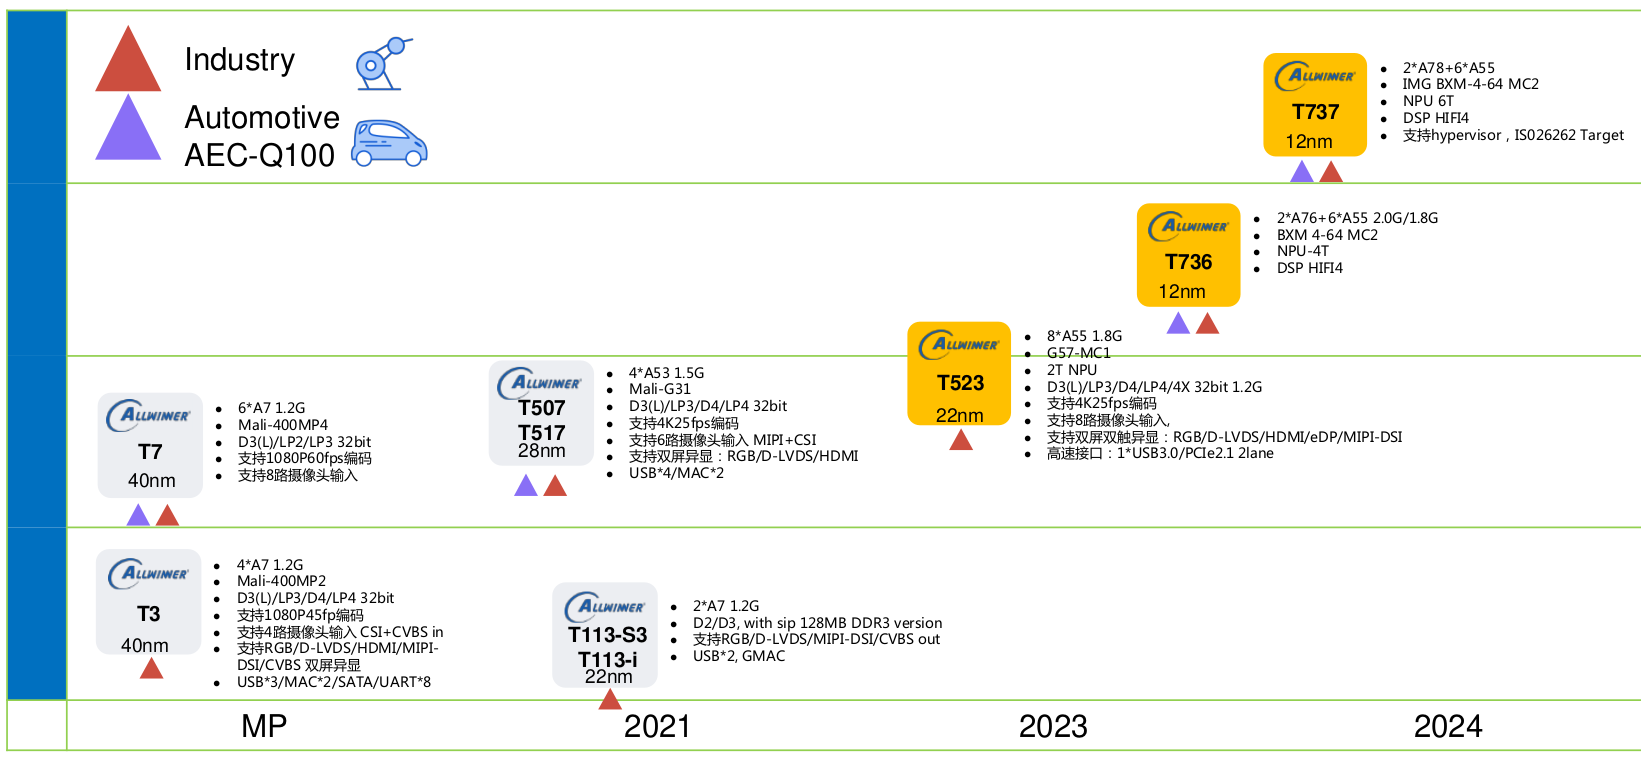 Allwinner Roadmap 2023 2024 automotive industrial SoCs